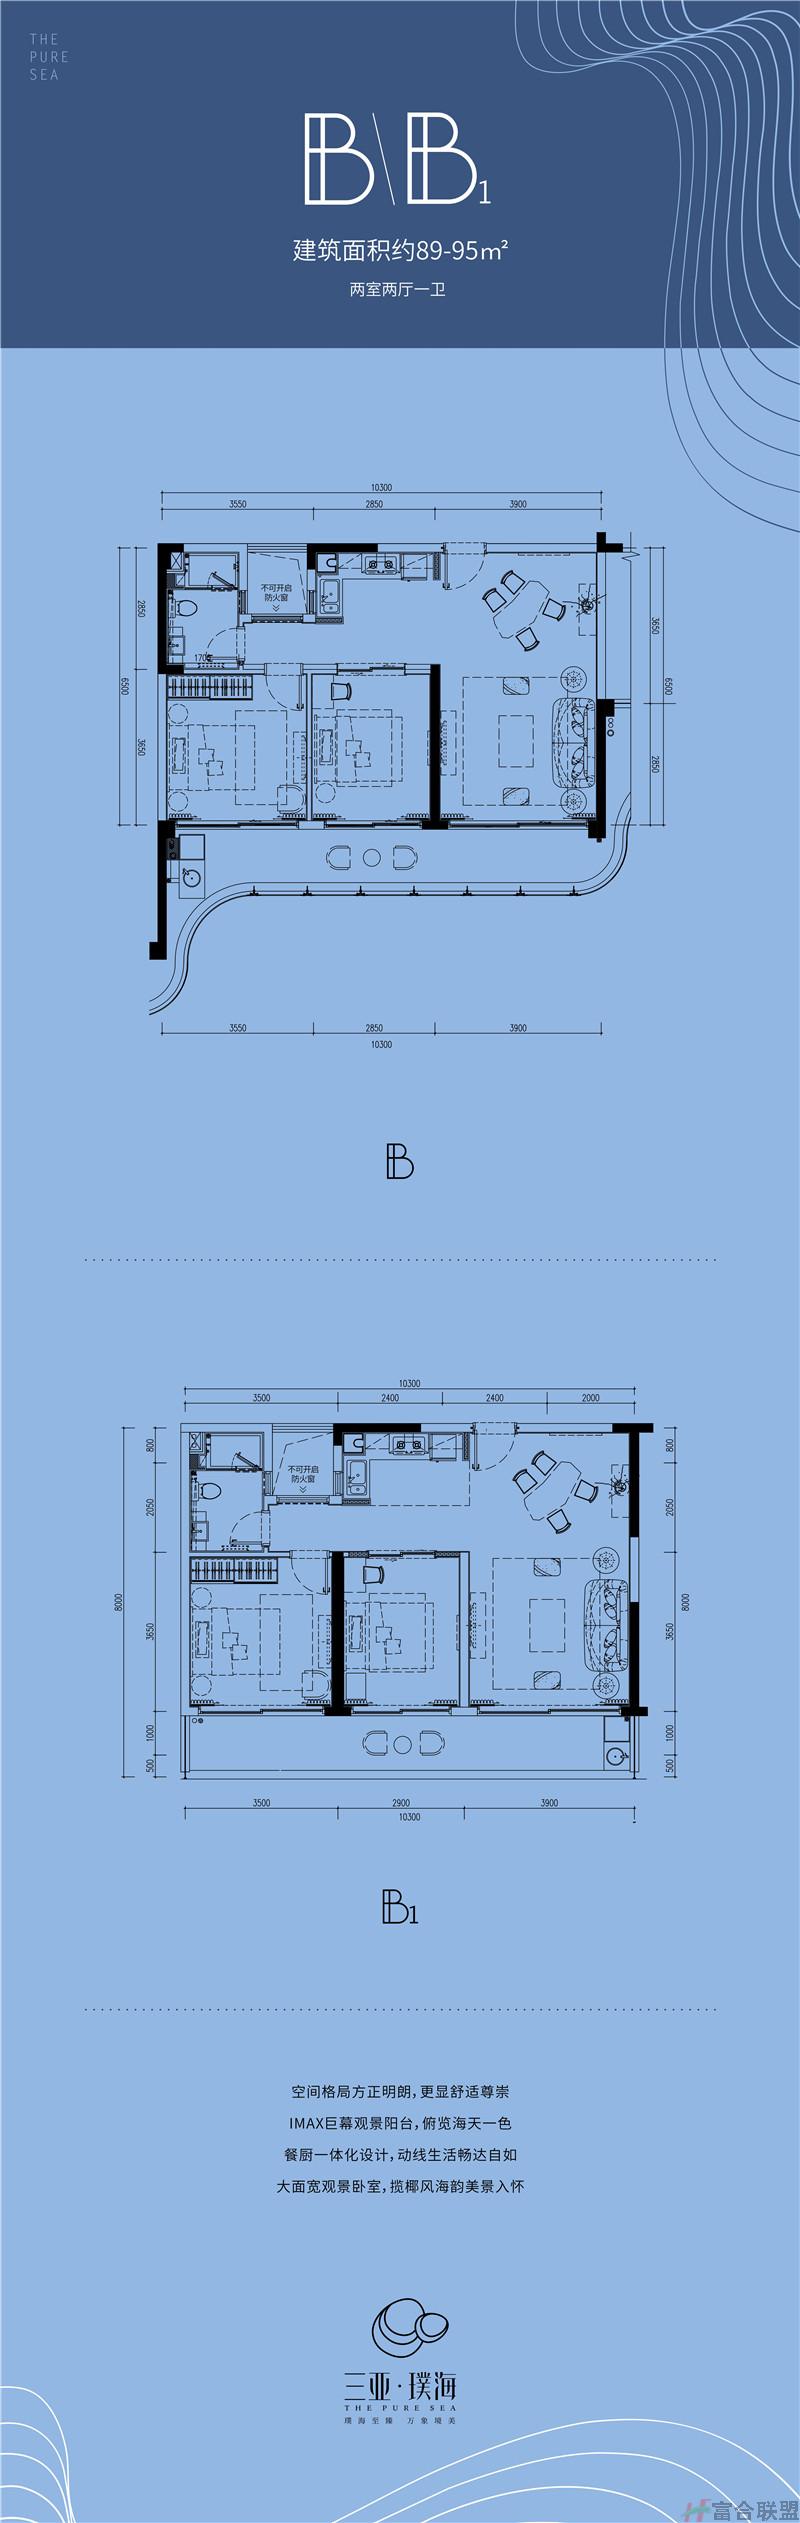 B、B1户型 2房2厅1卫 建筑面积约89-95平米.jpg